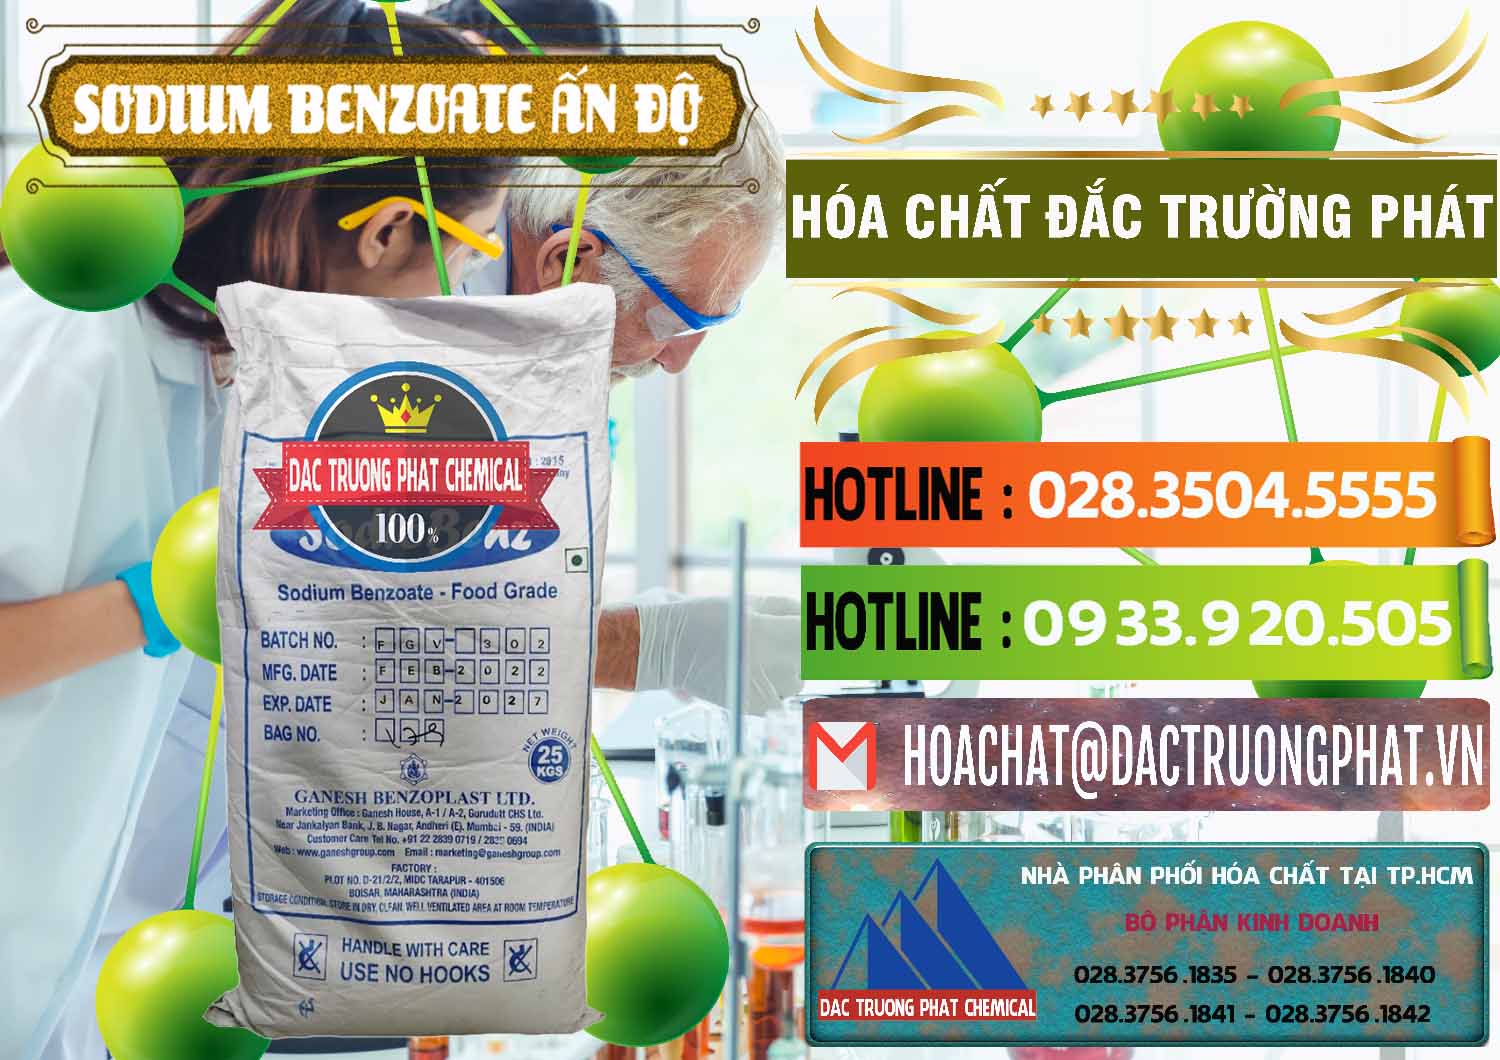 Nơi chuyên kinh doanh ( bán ) Sodium Benzoate - Mốc Bột Ấn Độ India - 0361 - Nơi phân phối ( cung cấp ) hóa chất tại TP.HCM - cungcaphoachat.com.vn